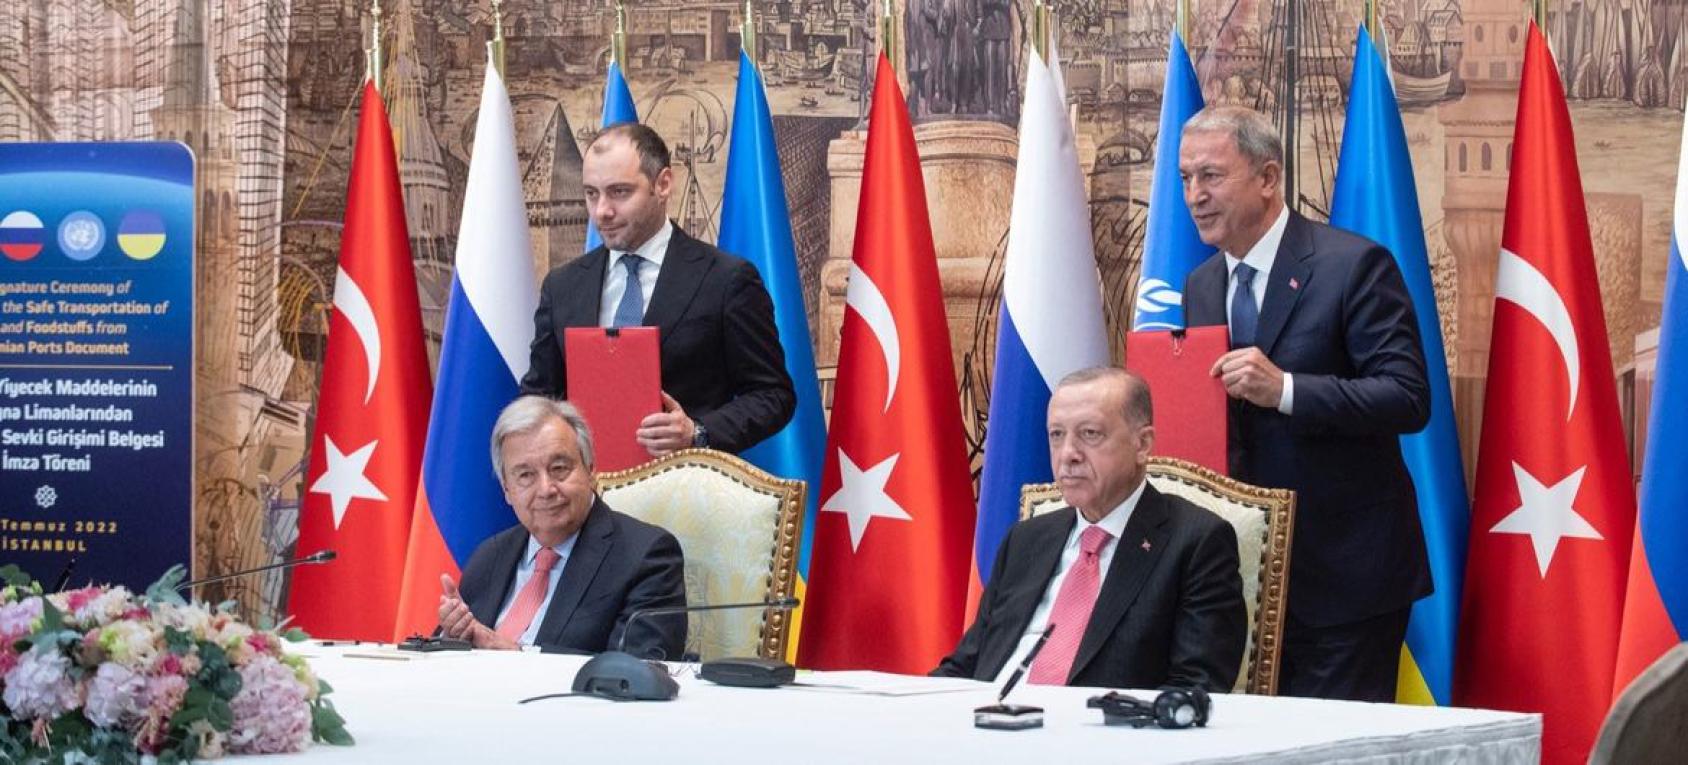 两名身穿西装的男子坐在一张桌子前，前面是麦克风，后面站着助手。桌子上装饰着俄罗斯、土耳其和联合国的旗帜。